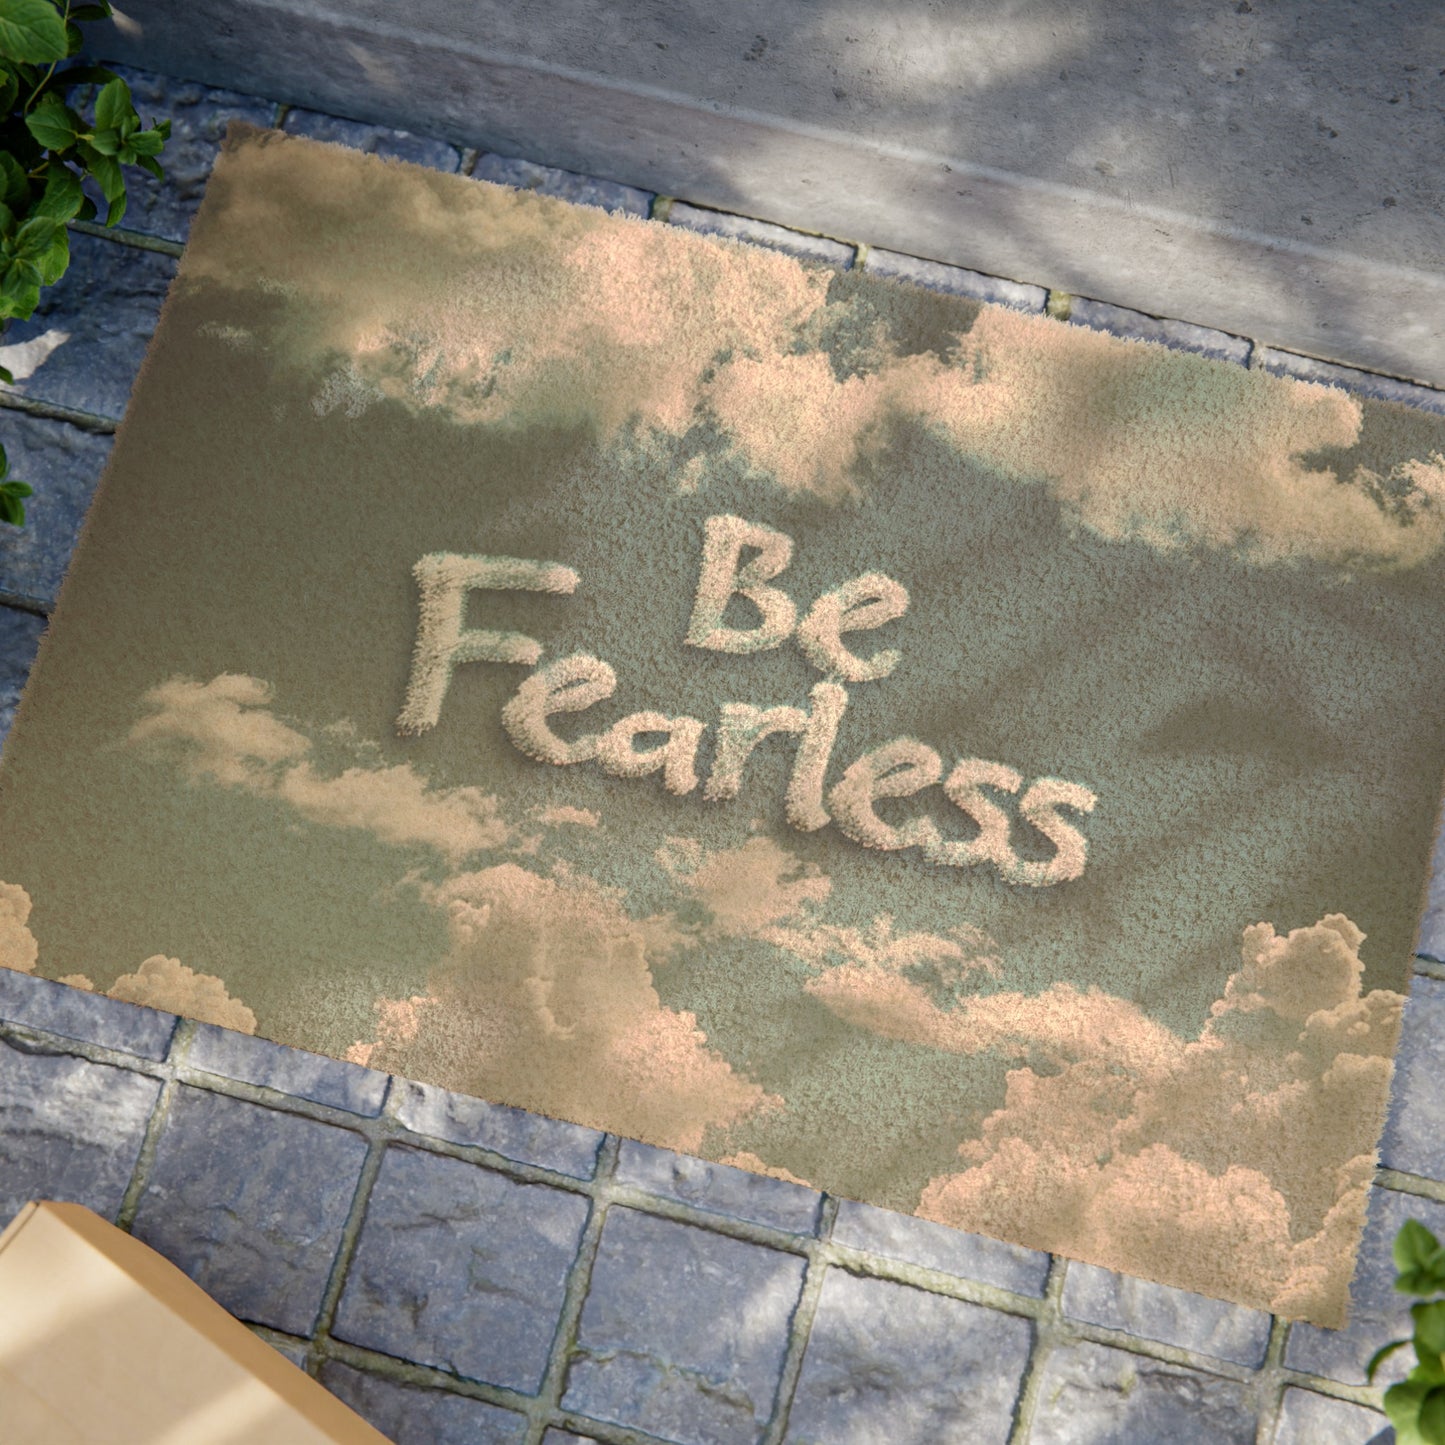 Doormat - Be Fearless